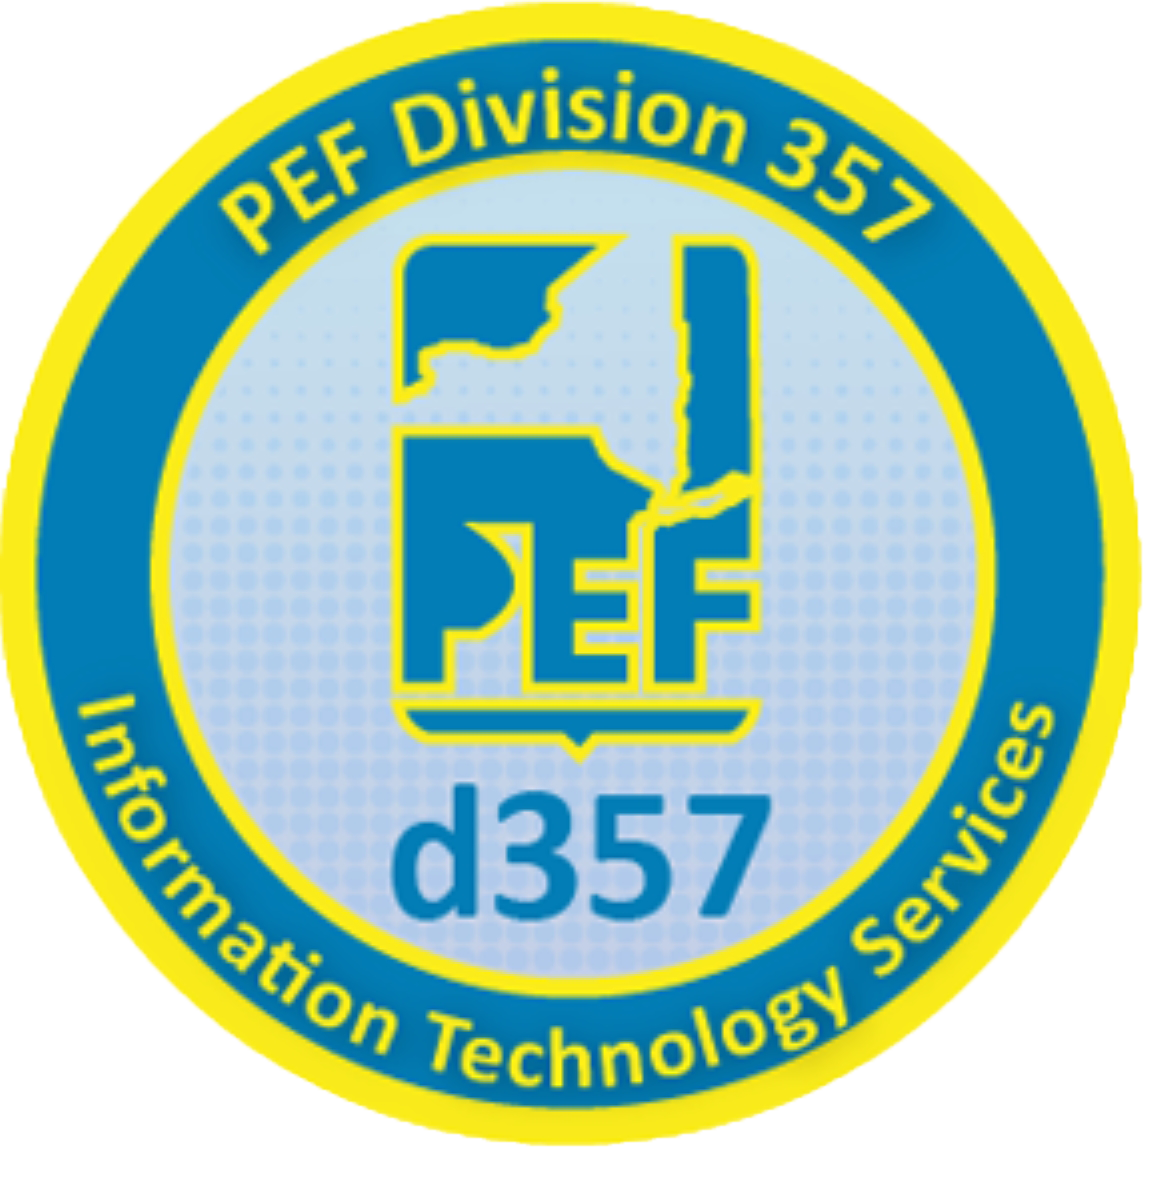 PEF Division 357